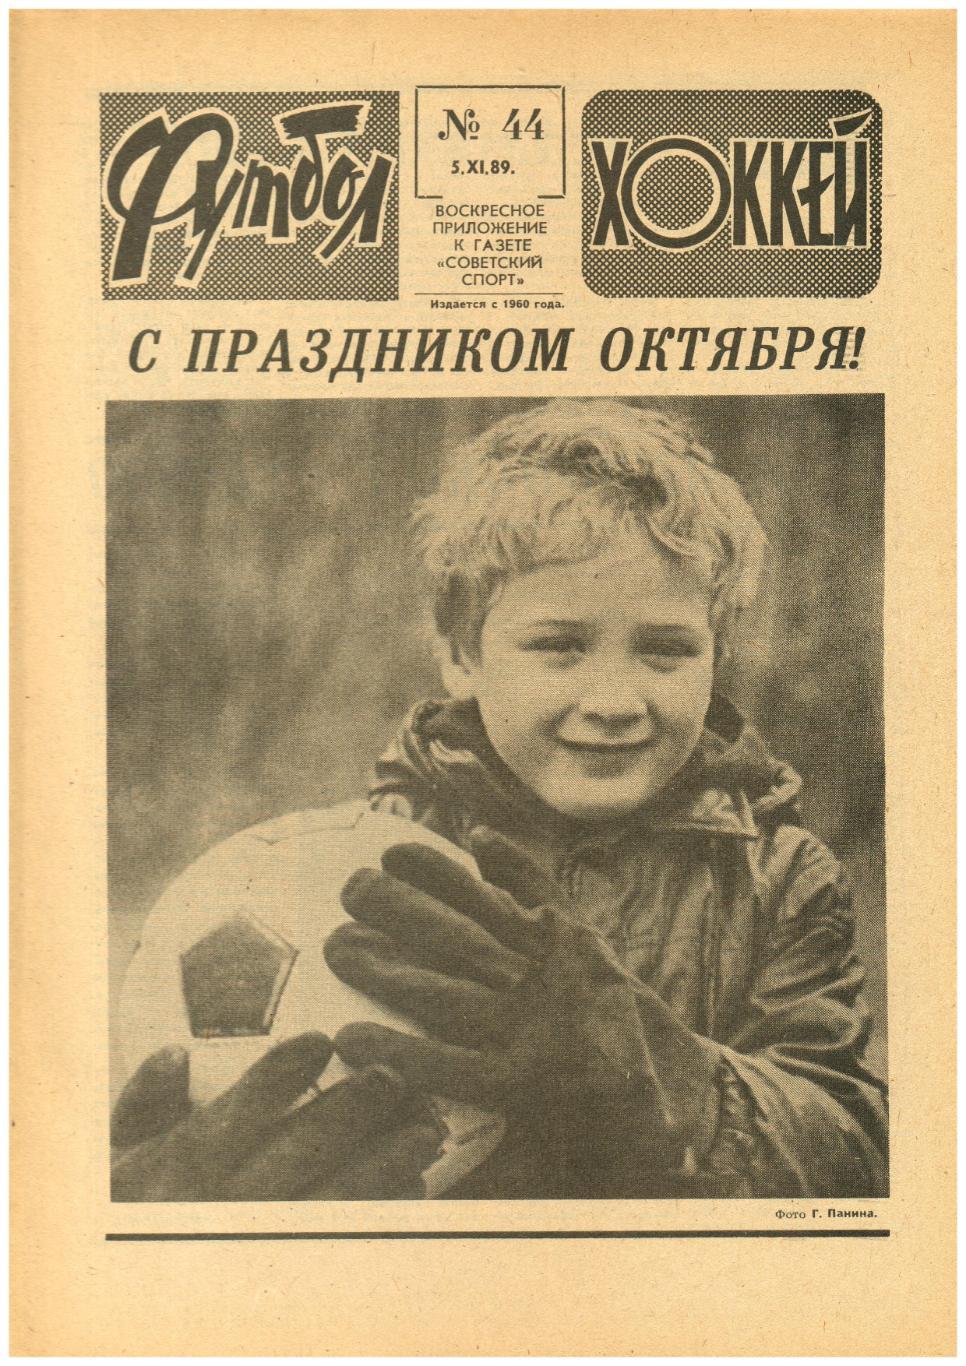 Футбол-Хоккей 1989 №44 Ф.Черенков о партнерах / ЕК Торпедо Спартак Москва Зенит